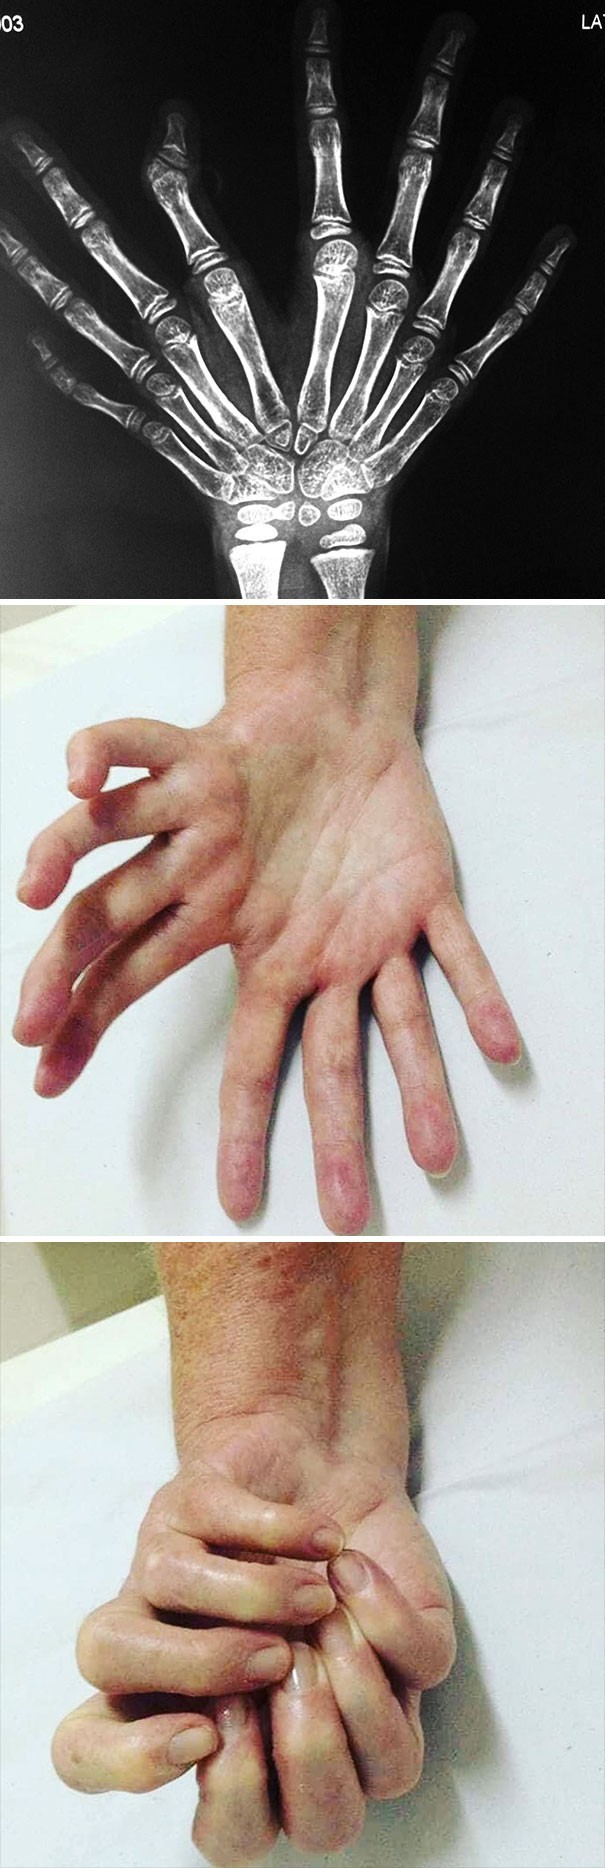 Bardzo rzadka wada wrodzona znana jako "lustrzana dłoń."